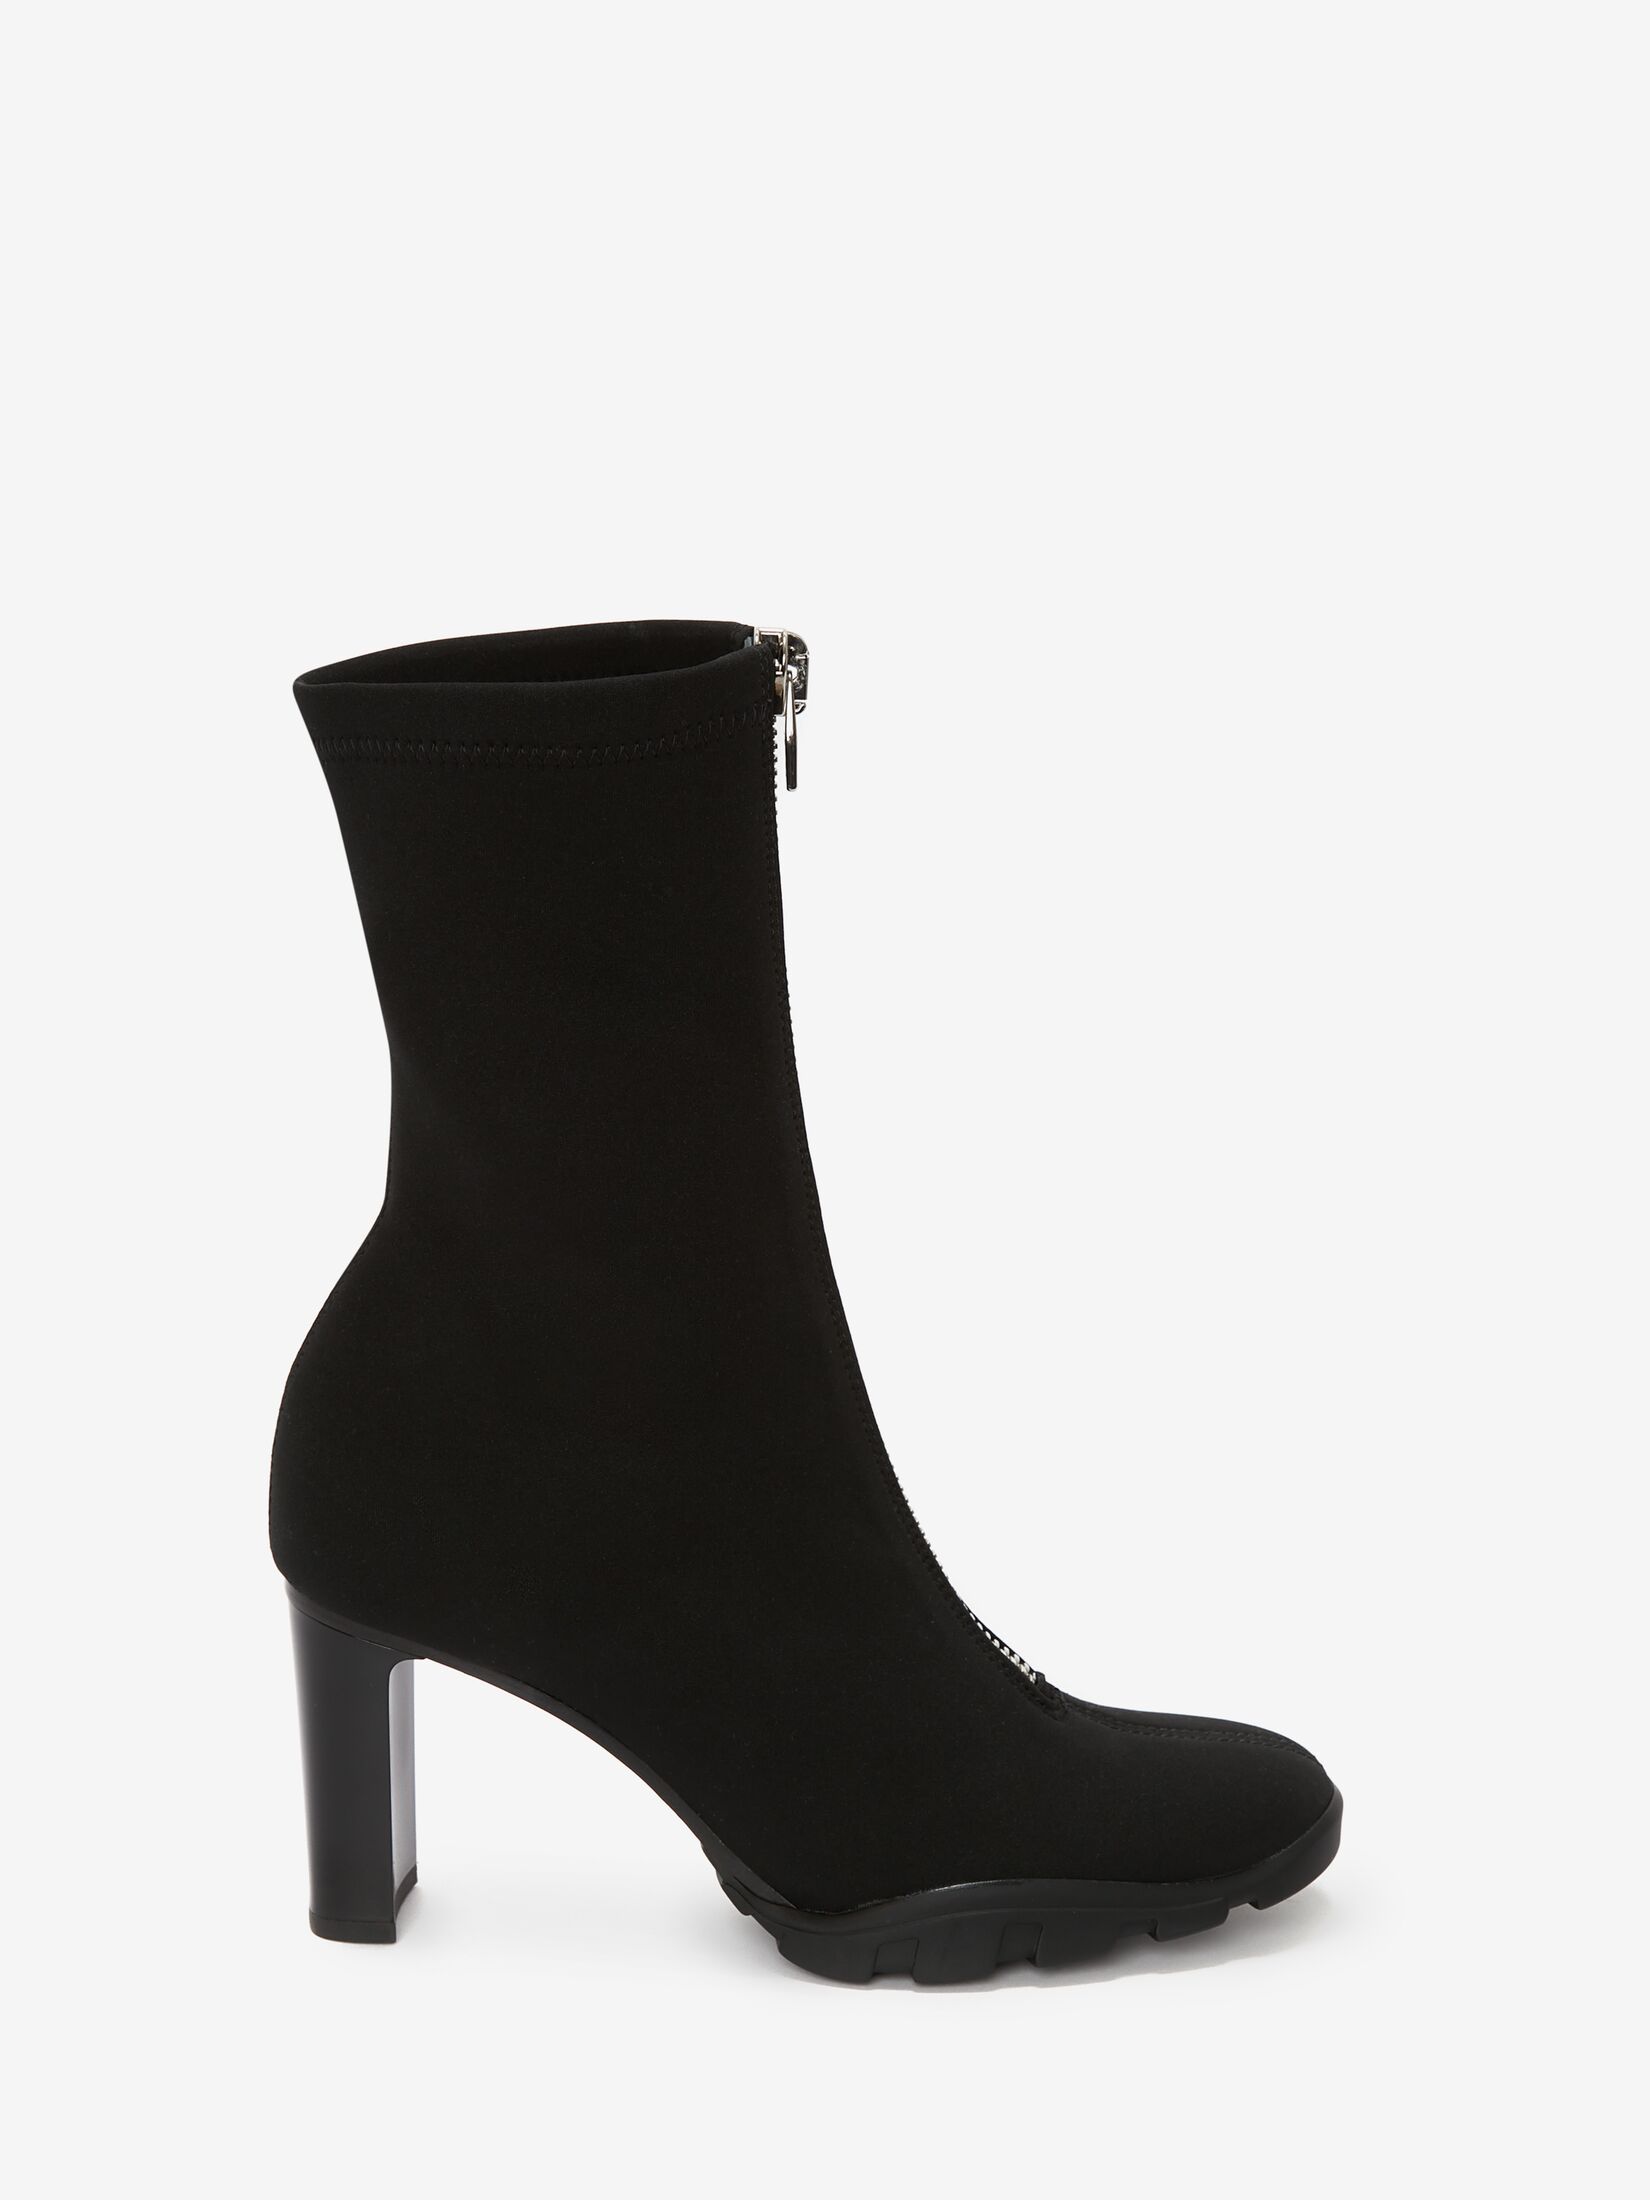 Women's Women's Boots | Ankle & Heel Boots | Alexander McQueen GB